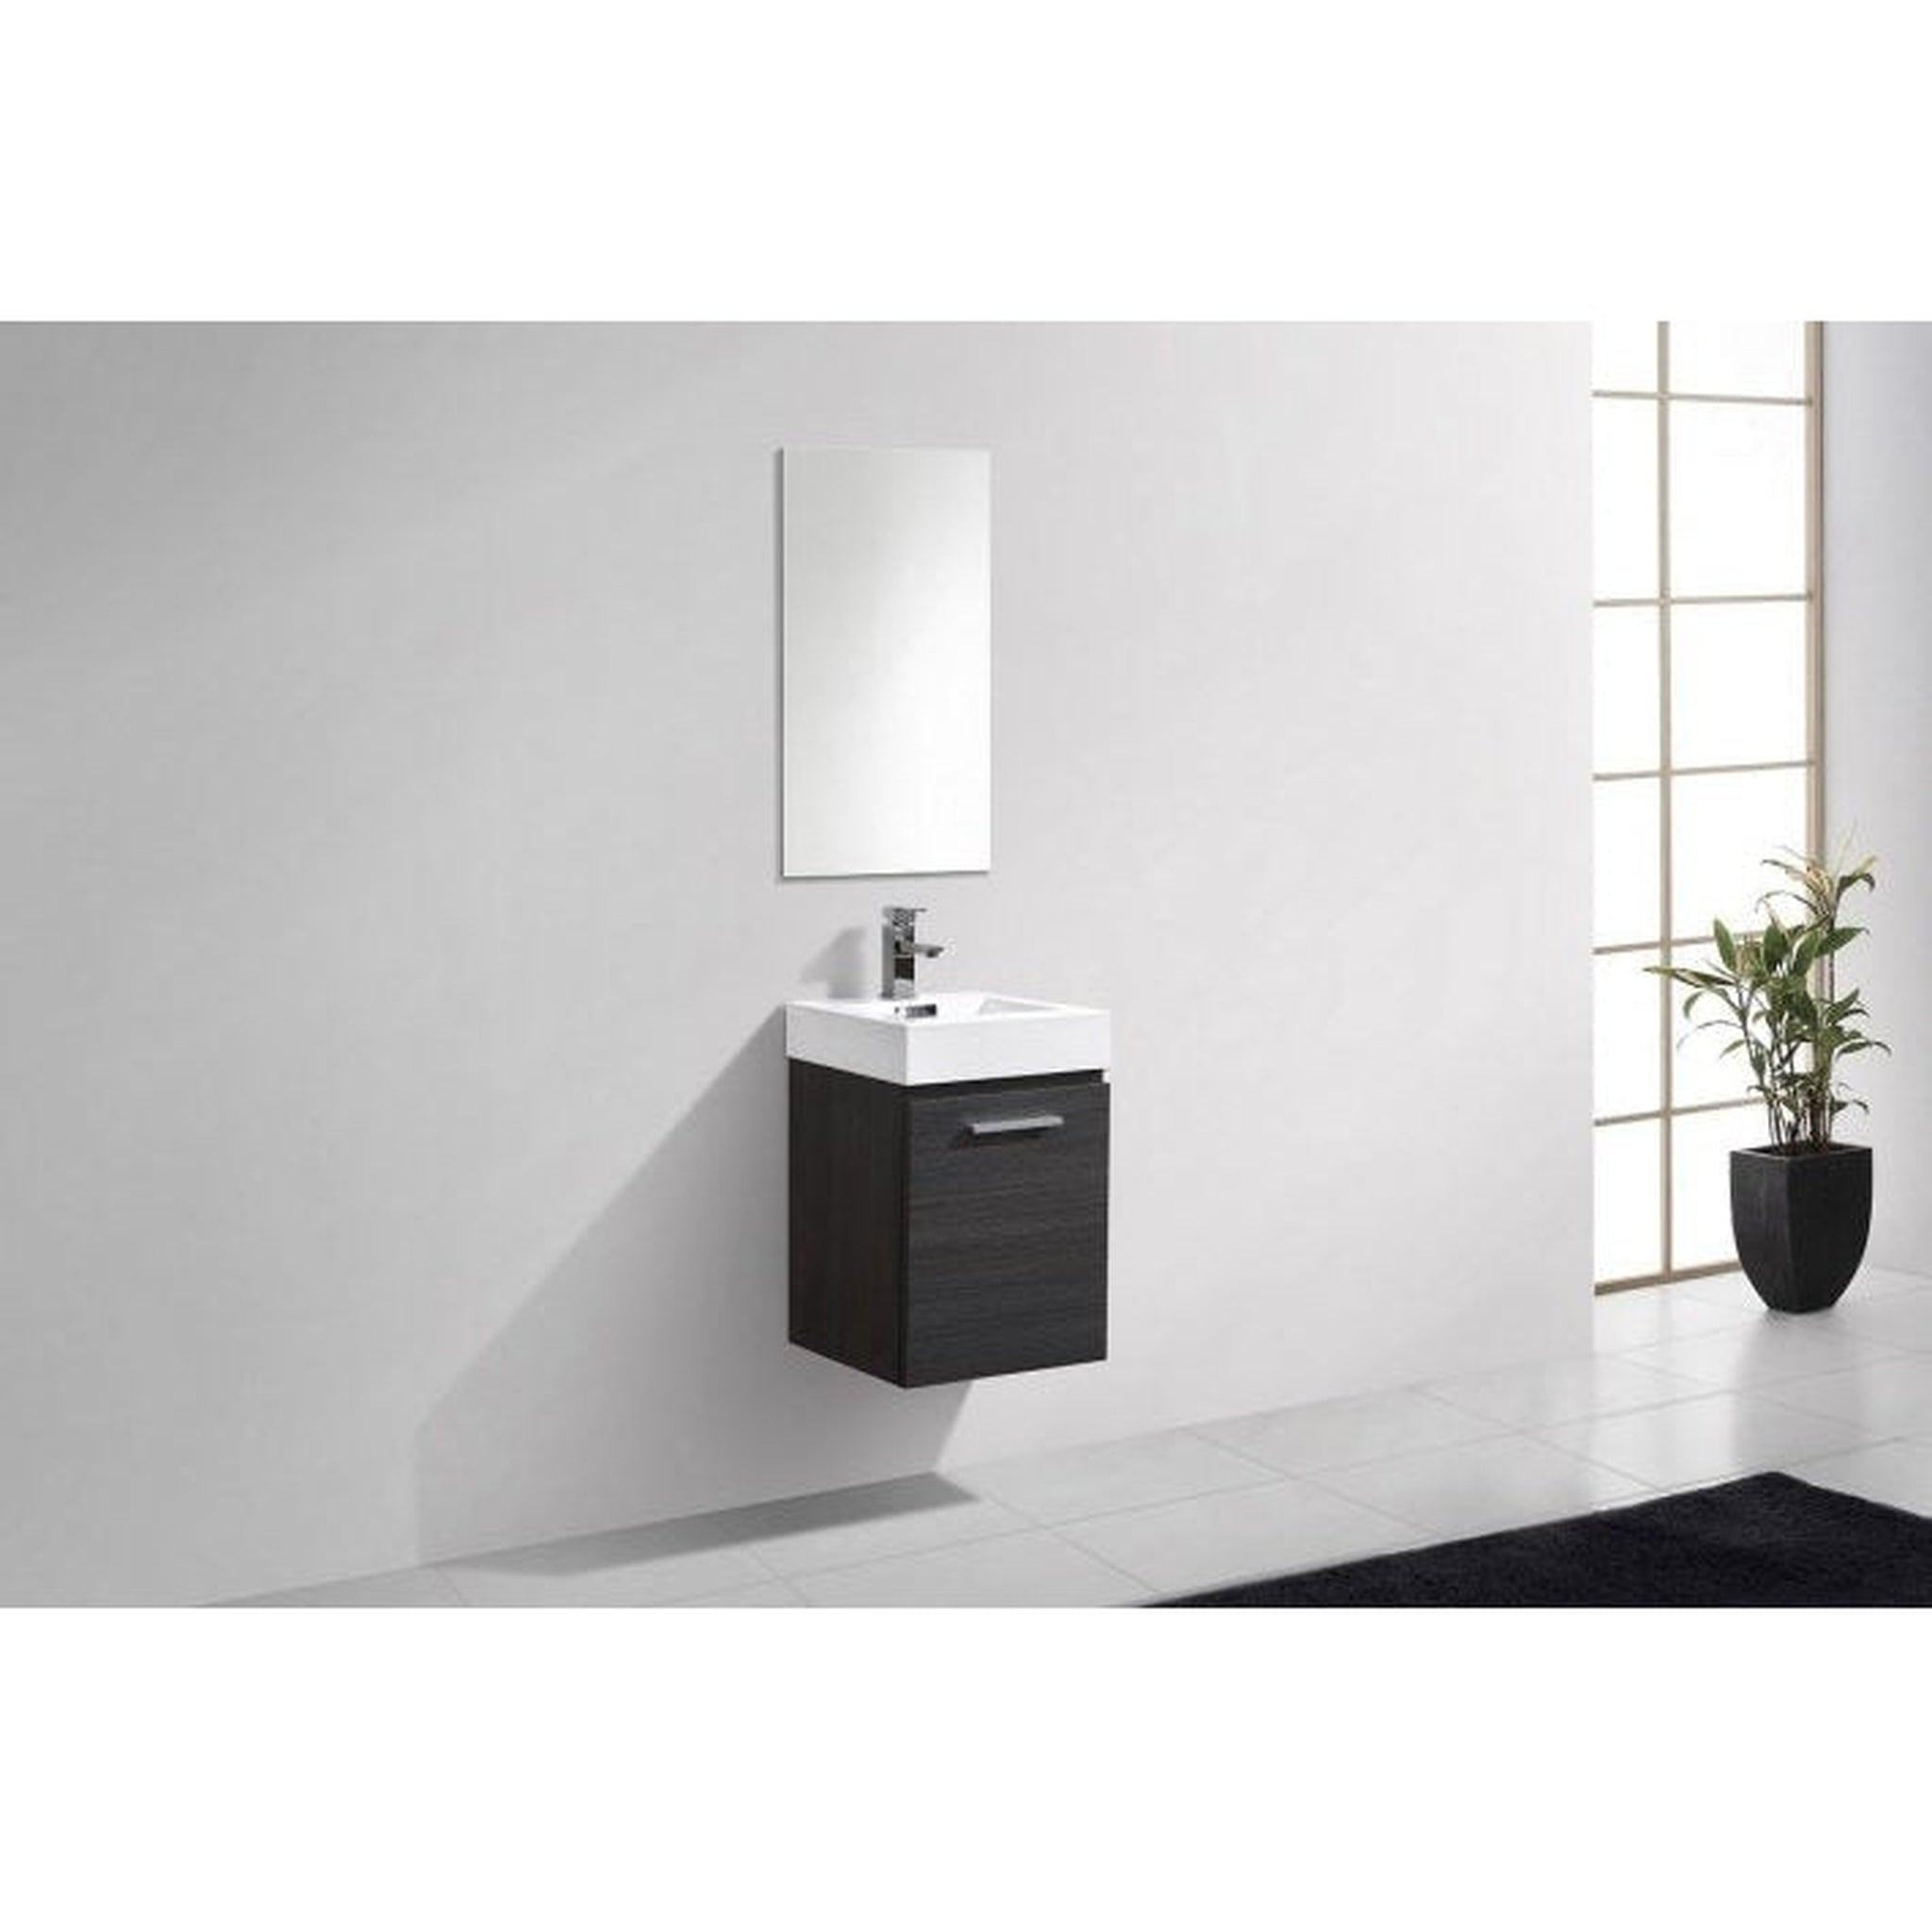 KubeBath, KubeBath Bliss 16" Gray Oak Wall-Mounted Modern Bathroom Vanity With Single Integrated Acrylic Sink With Overflow